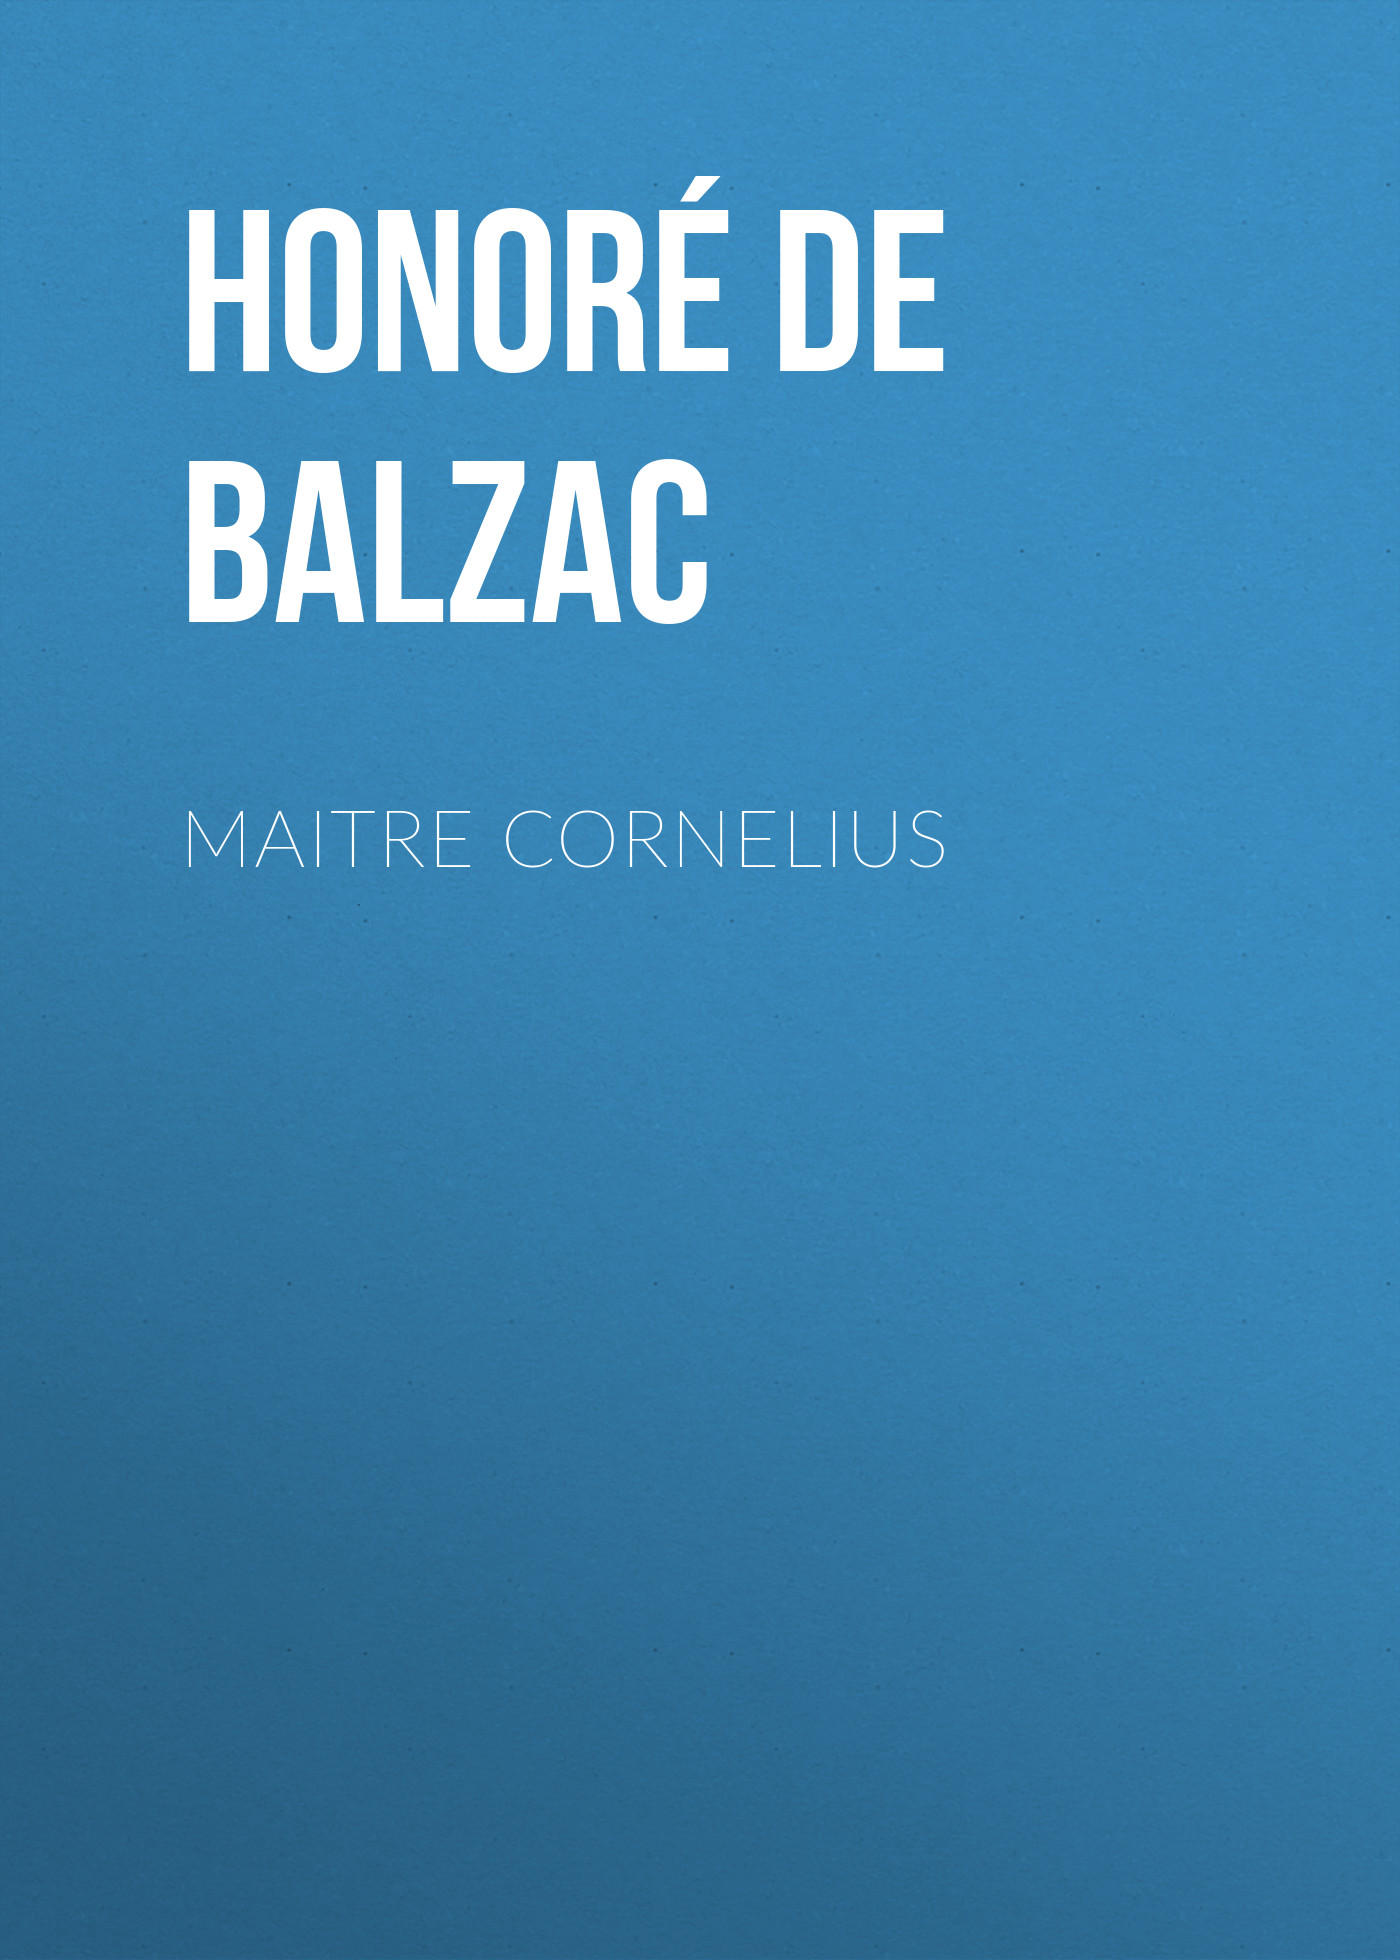 Книга Maitre Cornelius из серии , созданная Honoré Balzac, может относится к жанру Литература 19 века, Зарубежная старинная литература, Зарубежная классика. Стоимость электронной книги Maitre Cornelius с идентификатором 25020707 составляет 0 руб.